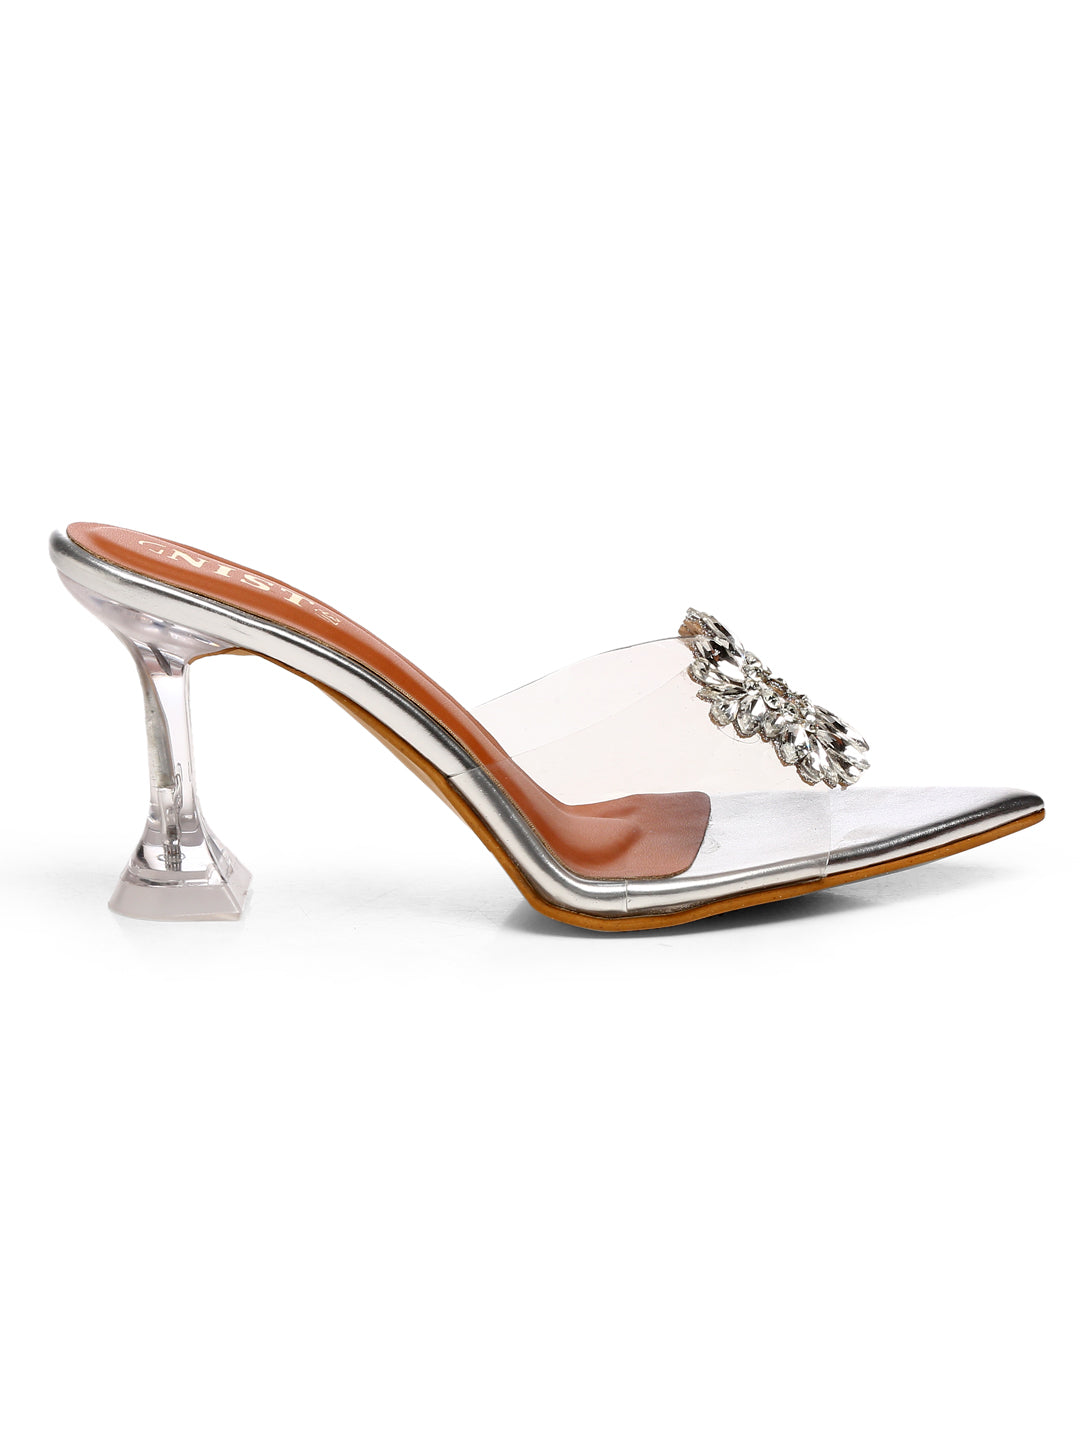 GNIST Pointed Embellished Transparent Silver Heels